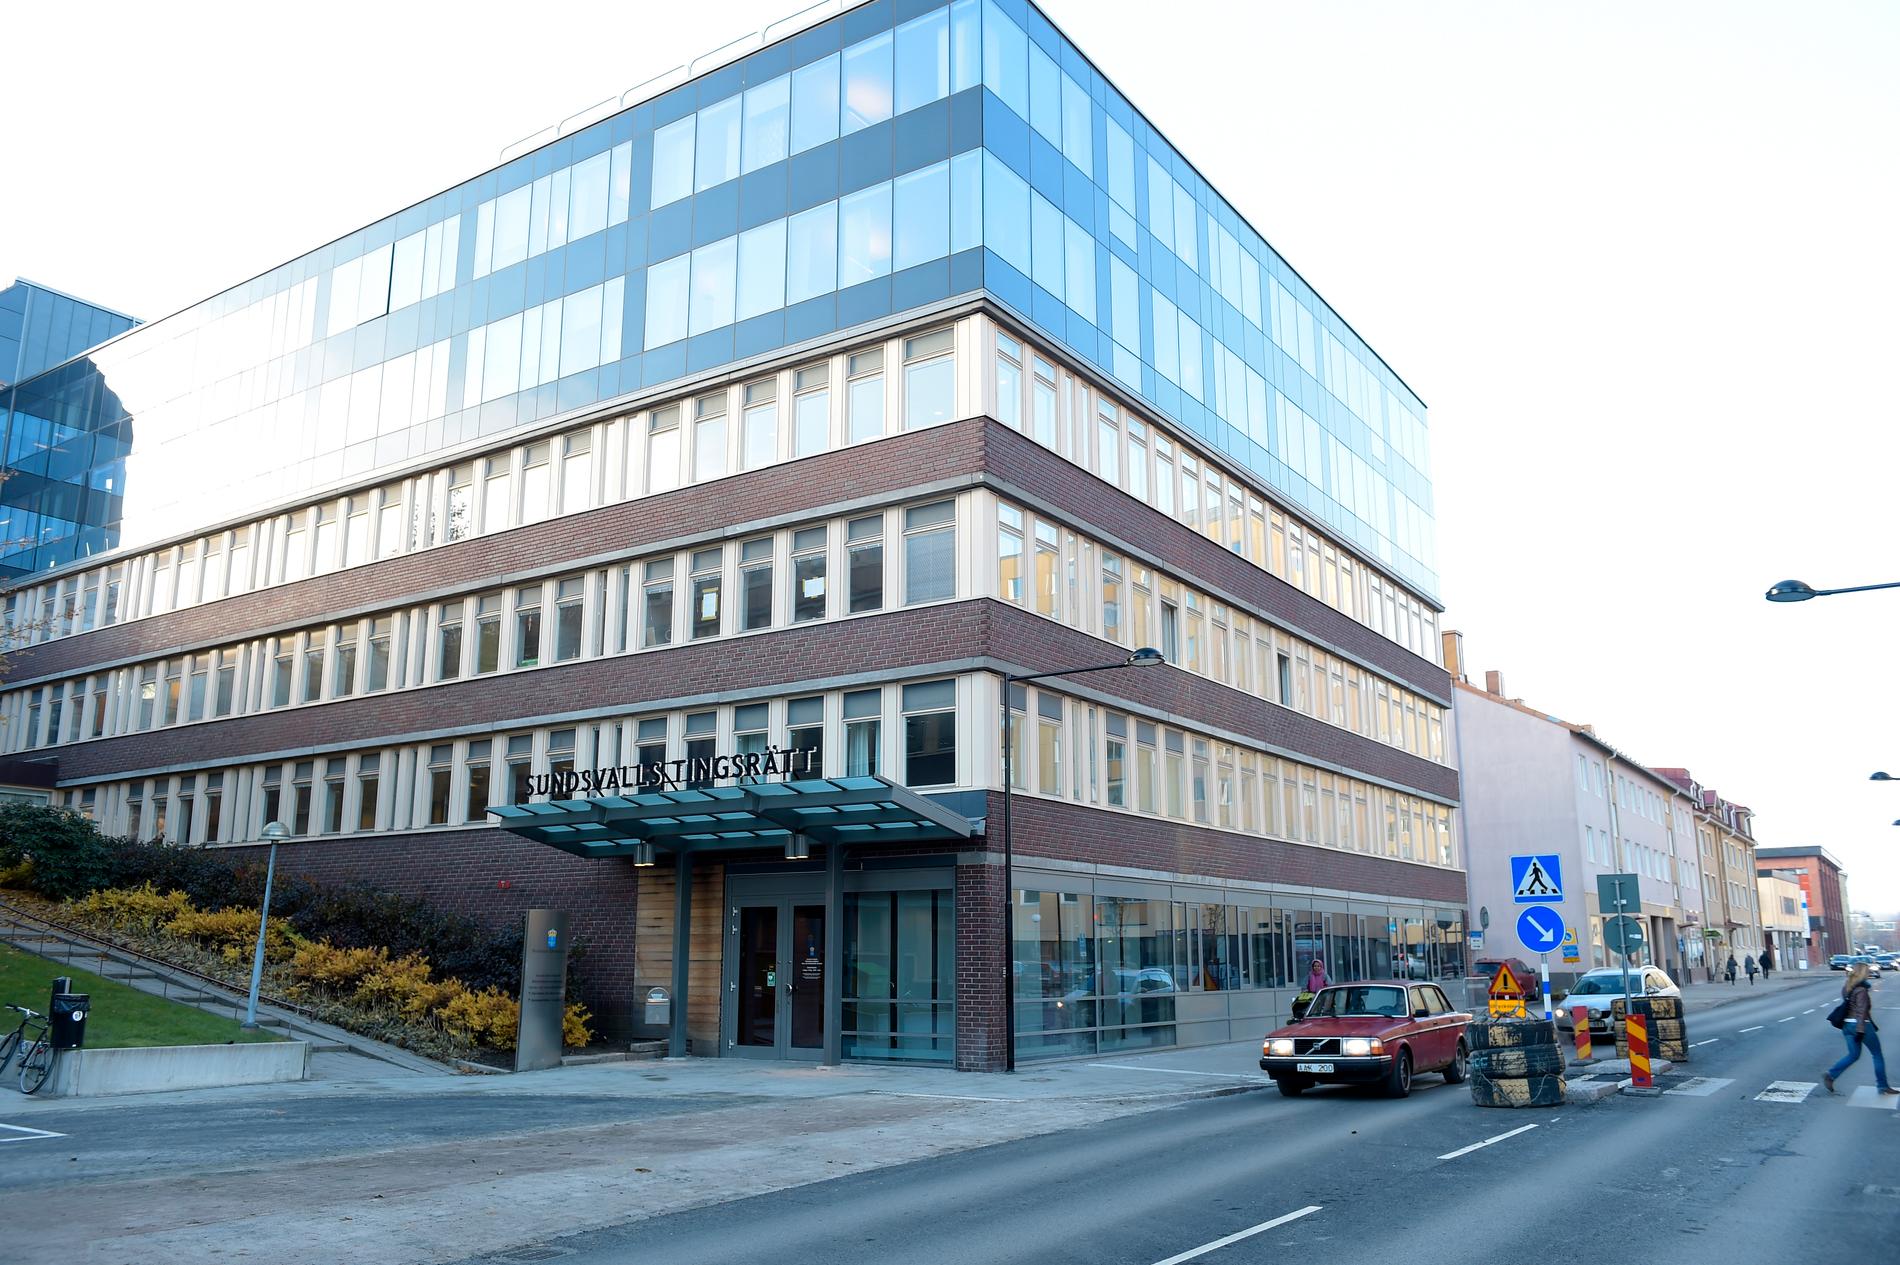 En ung man åtalas i Sundsvall för en rad brott, bland annat olaga hot och våldtäkt. Arkivbild.